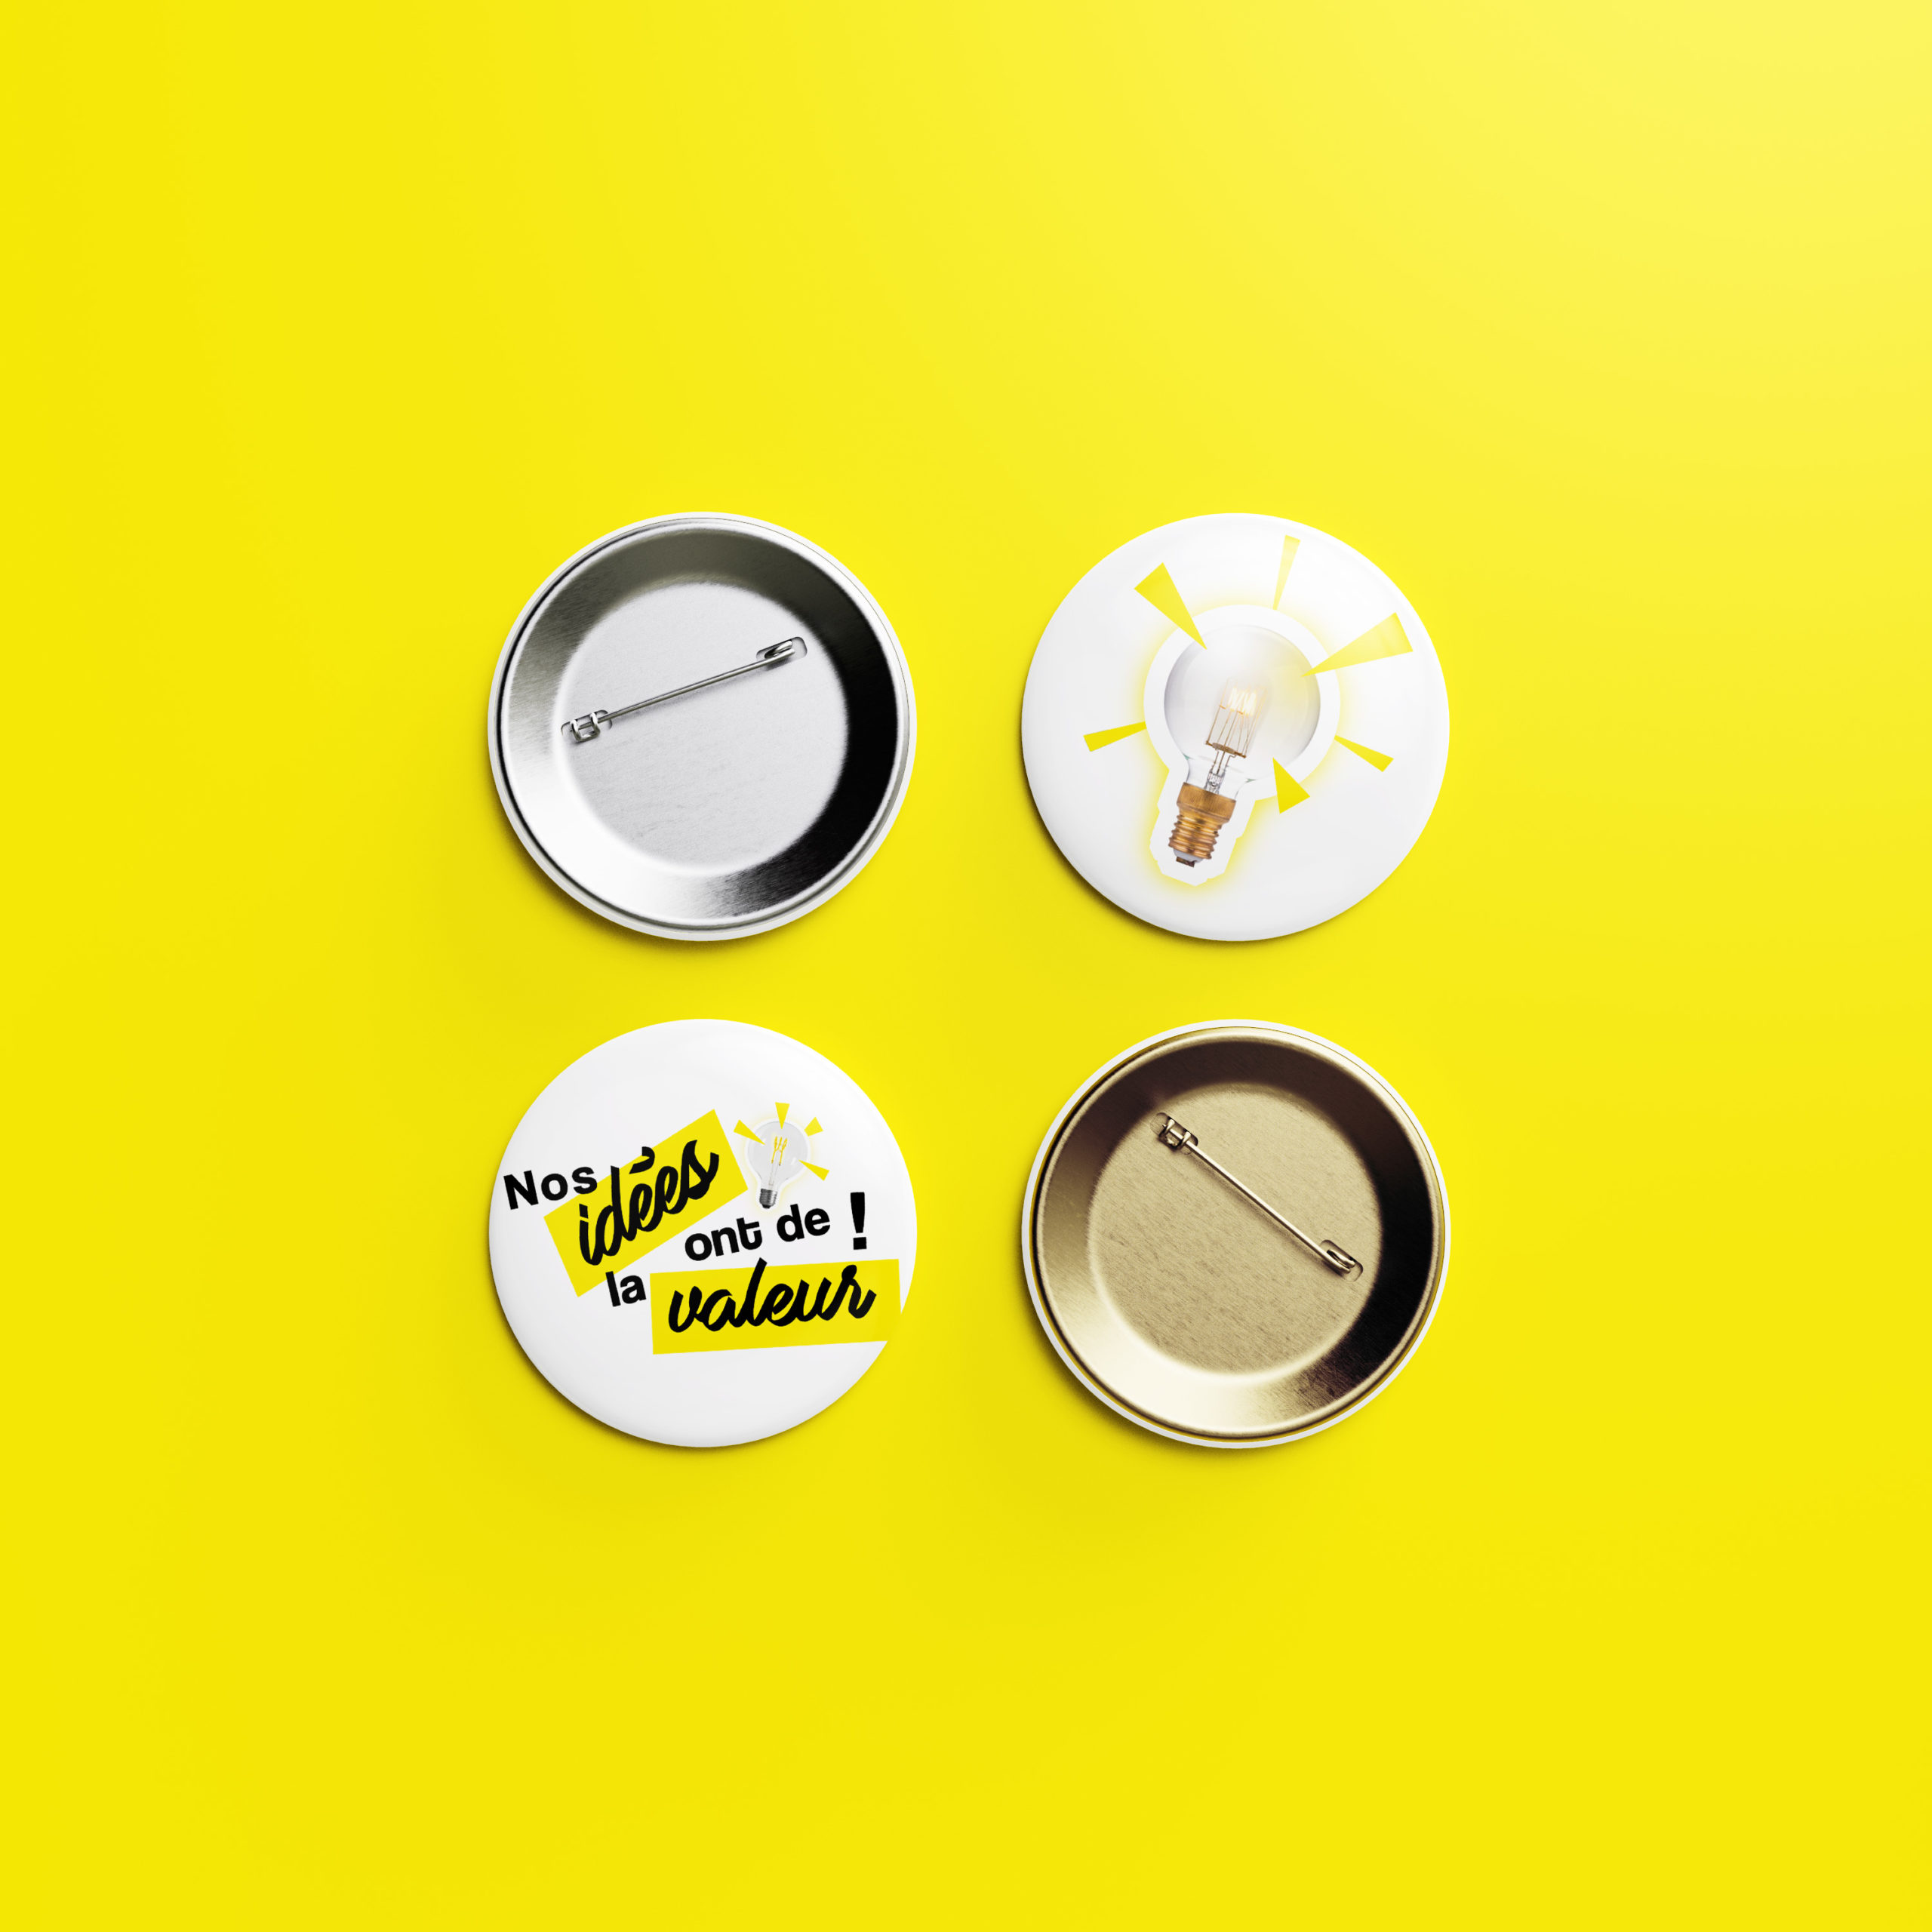 déclinaison de l'identité visuelle de la campagne de communication de la SWDE "Nos idées ont de la valeur" sur des badges déposés sur un fond jaune.